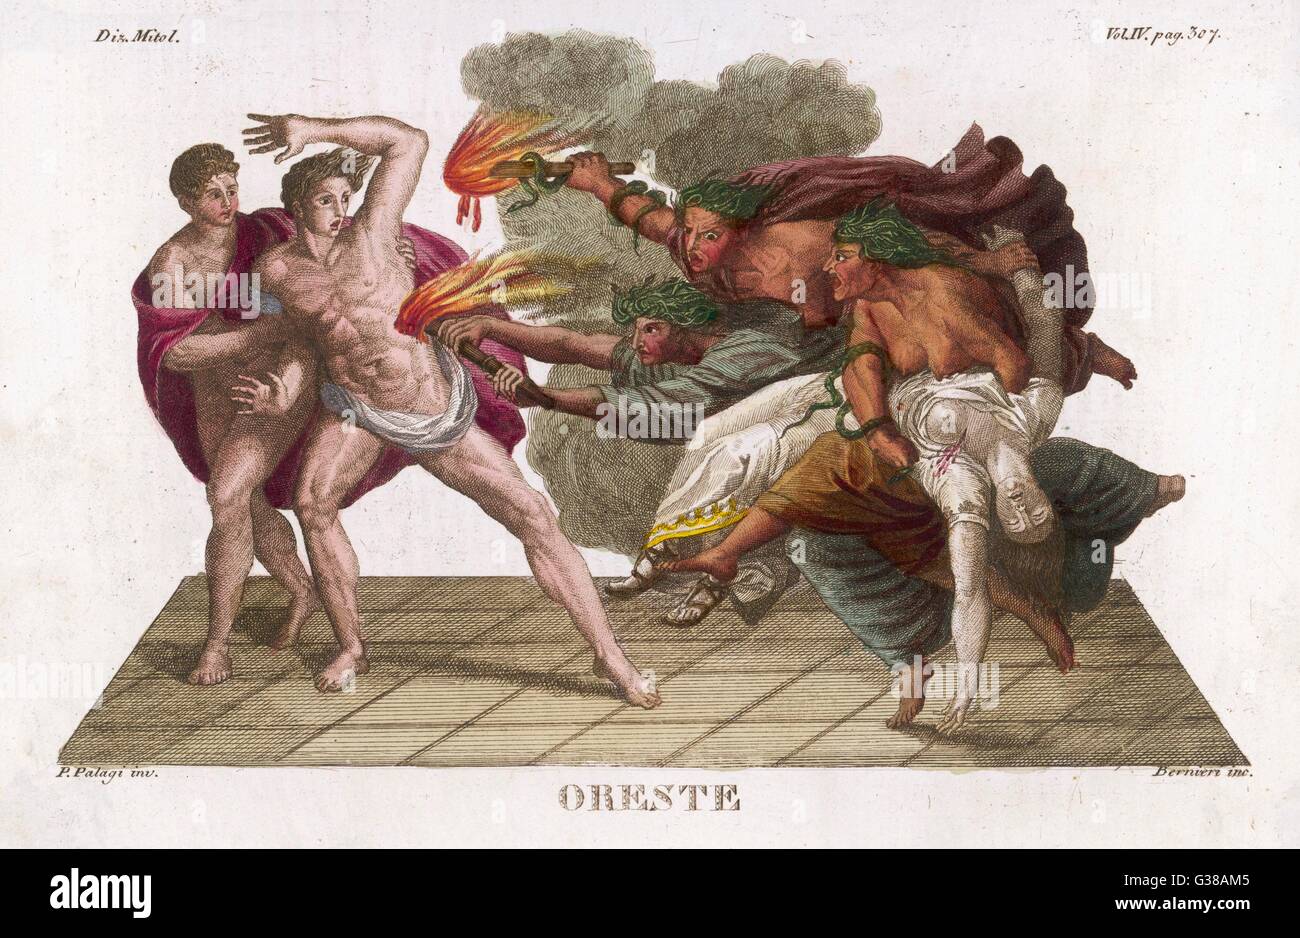 Orestes y Pylades, aunque honor requiere para asesinar a Egisto y Clitemnestra están, sin embargo, perseguido por las furias (Erinyes o Foto de stock